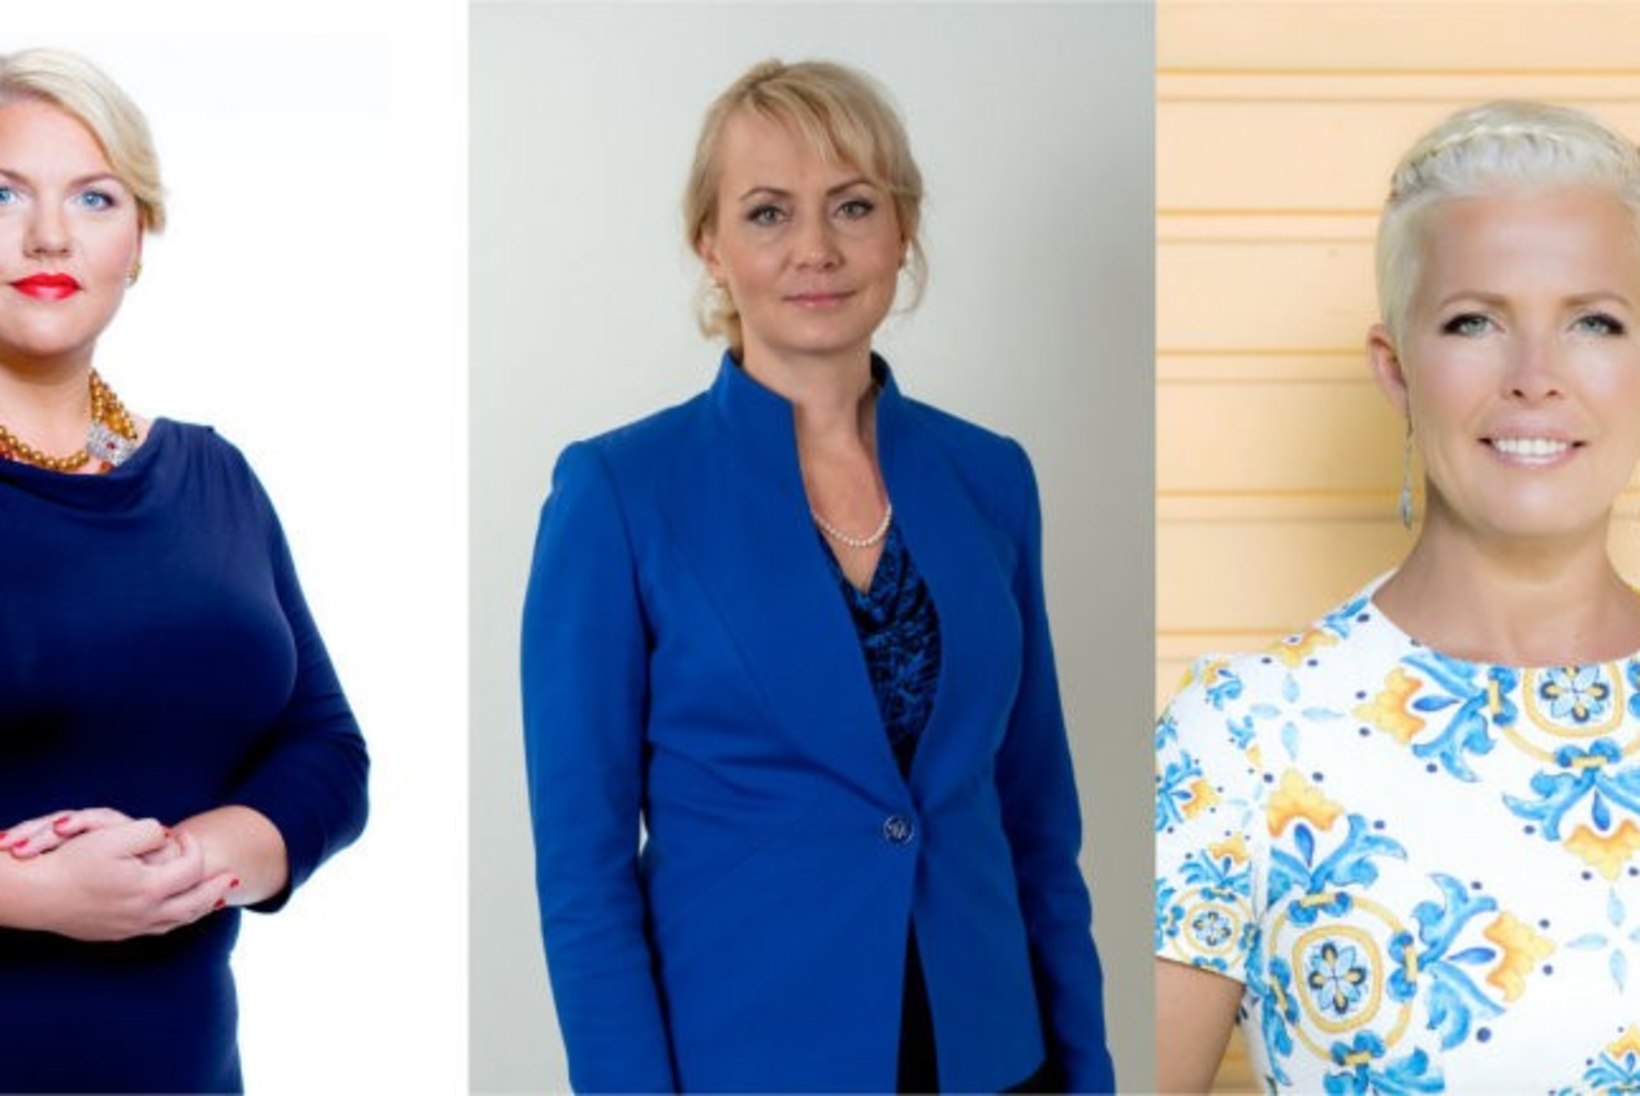 TÄNA AASTA TAGASI valiti Kersti Kaljulaid Eesti ajaloo esimeseks naispresidendiks!